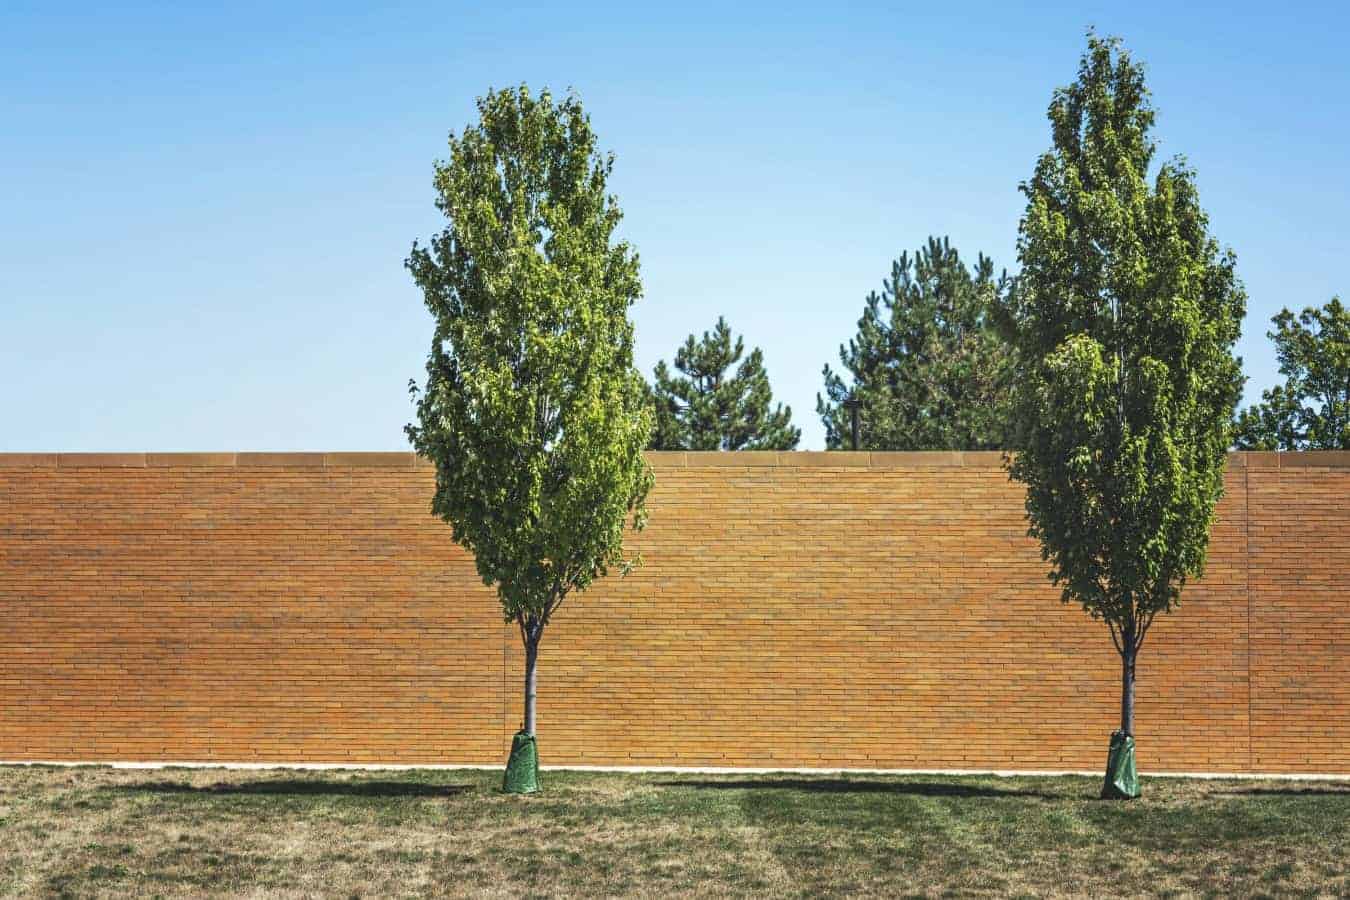 bricks-wall-garden-trees